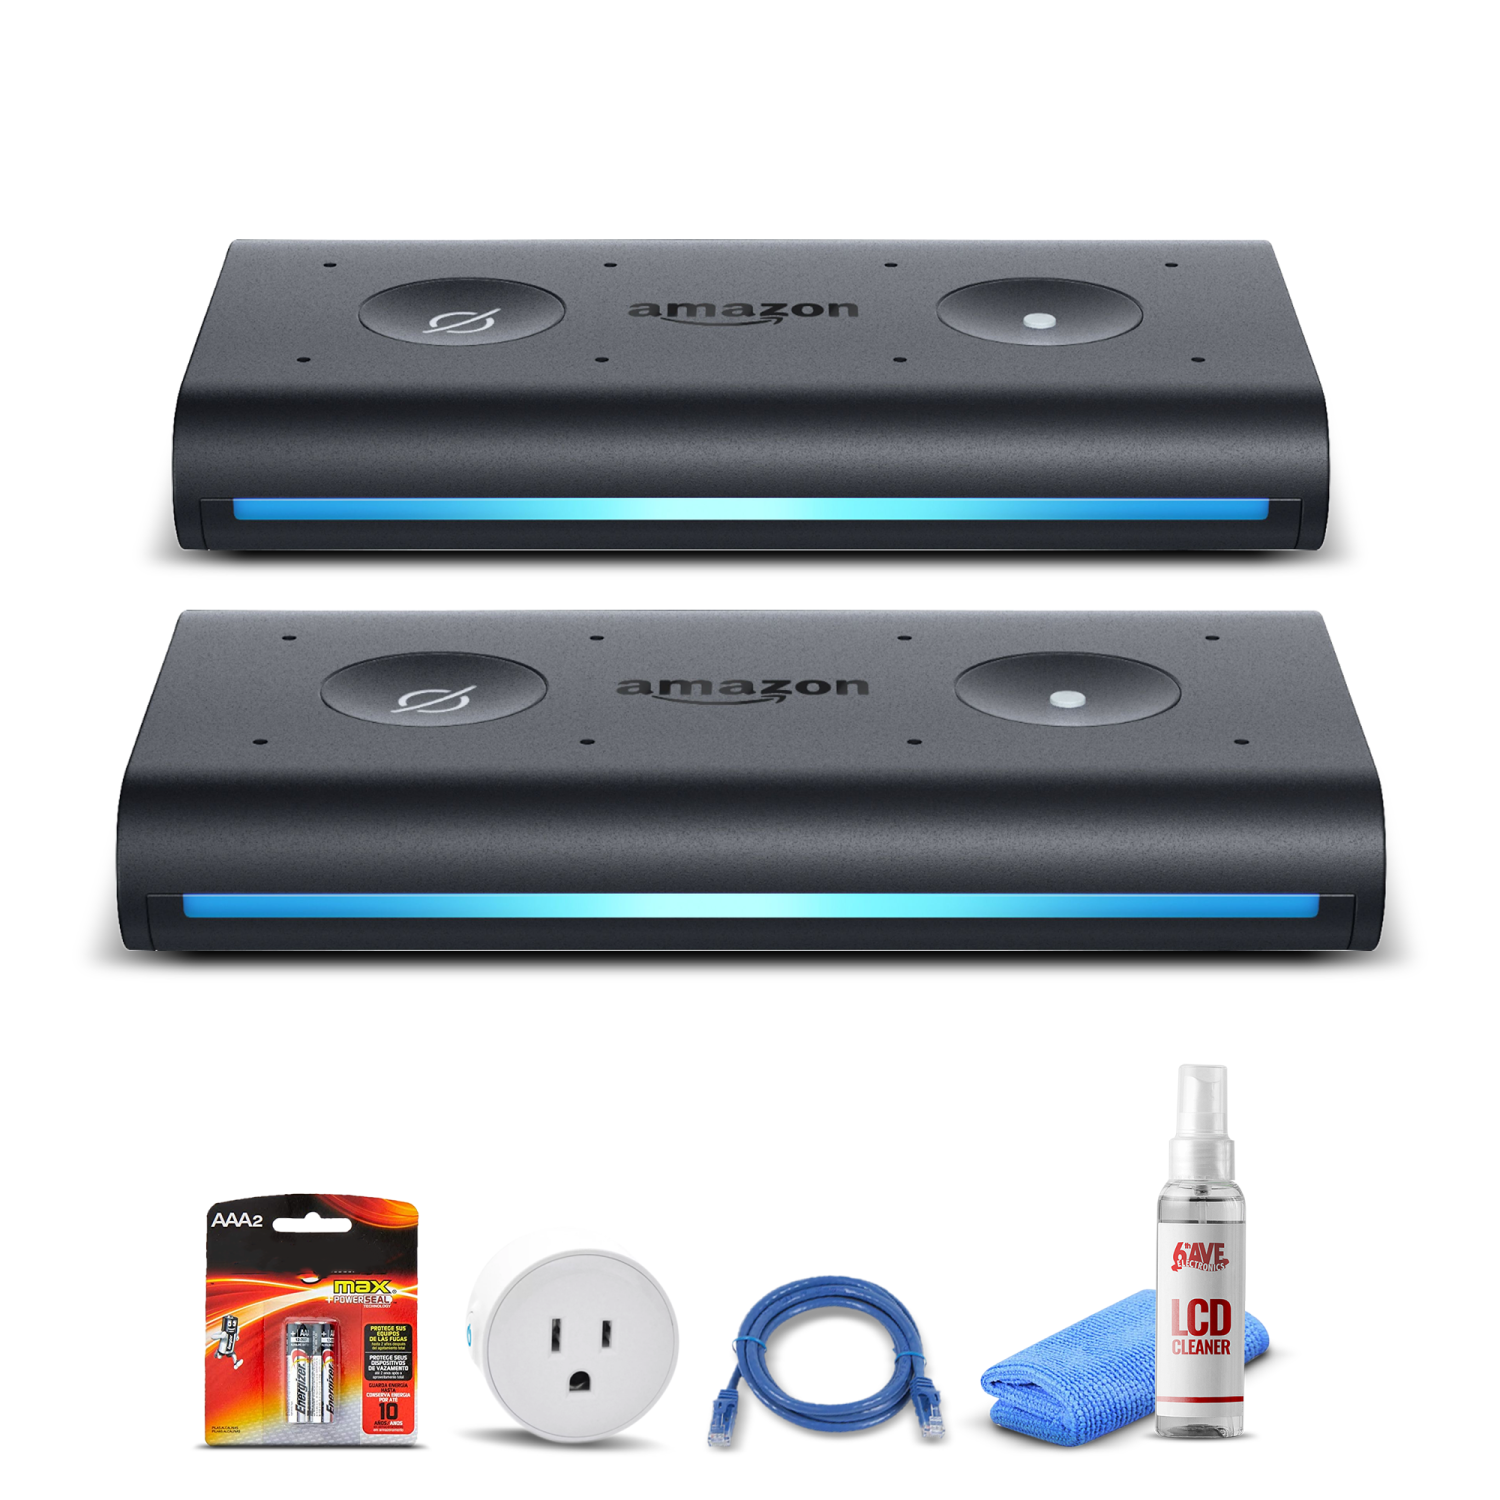 (2) Amazon Echo Auto Smart Speaker + Smart Plug + Cat5 Cable + Batteries